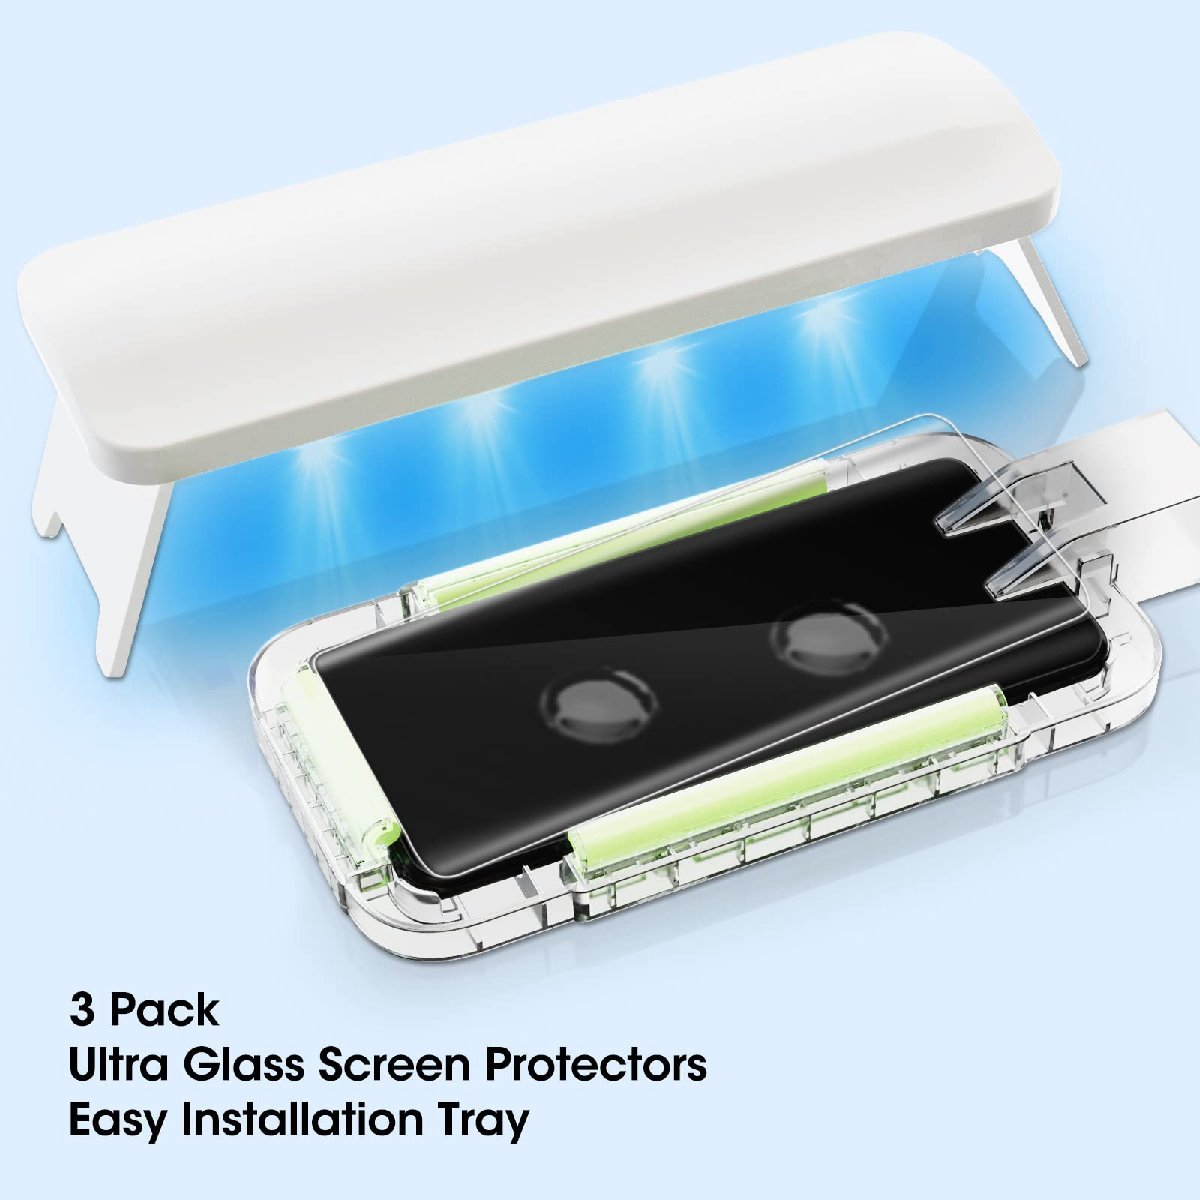 送料無料★Galaxy S23 Ultra ガラスフィルム 3D曲面 指紋認証対応 3+2枚セット 9H硬度 指紋解除対応 UV_画像3